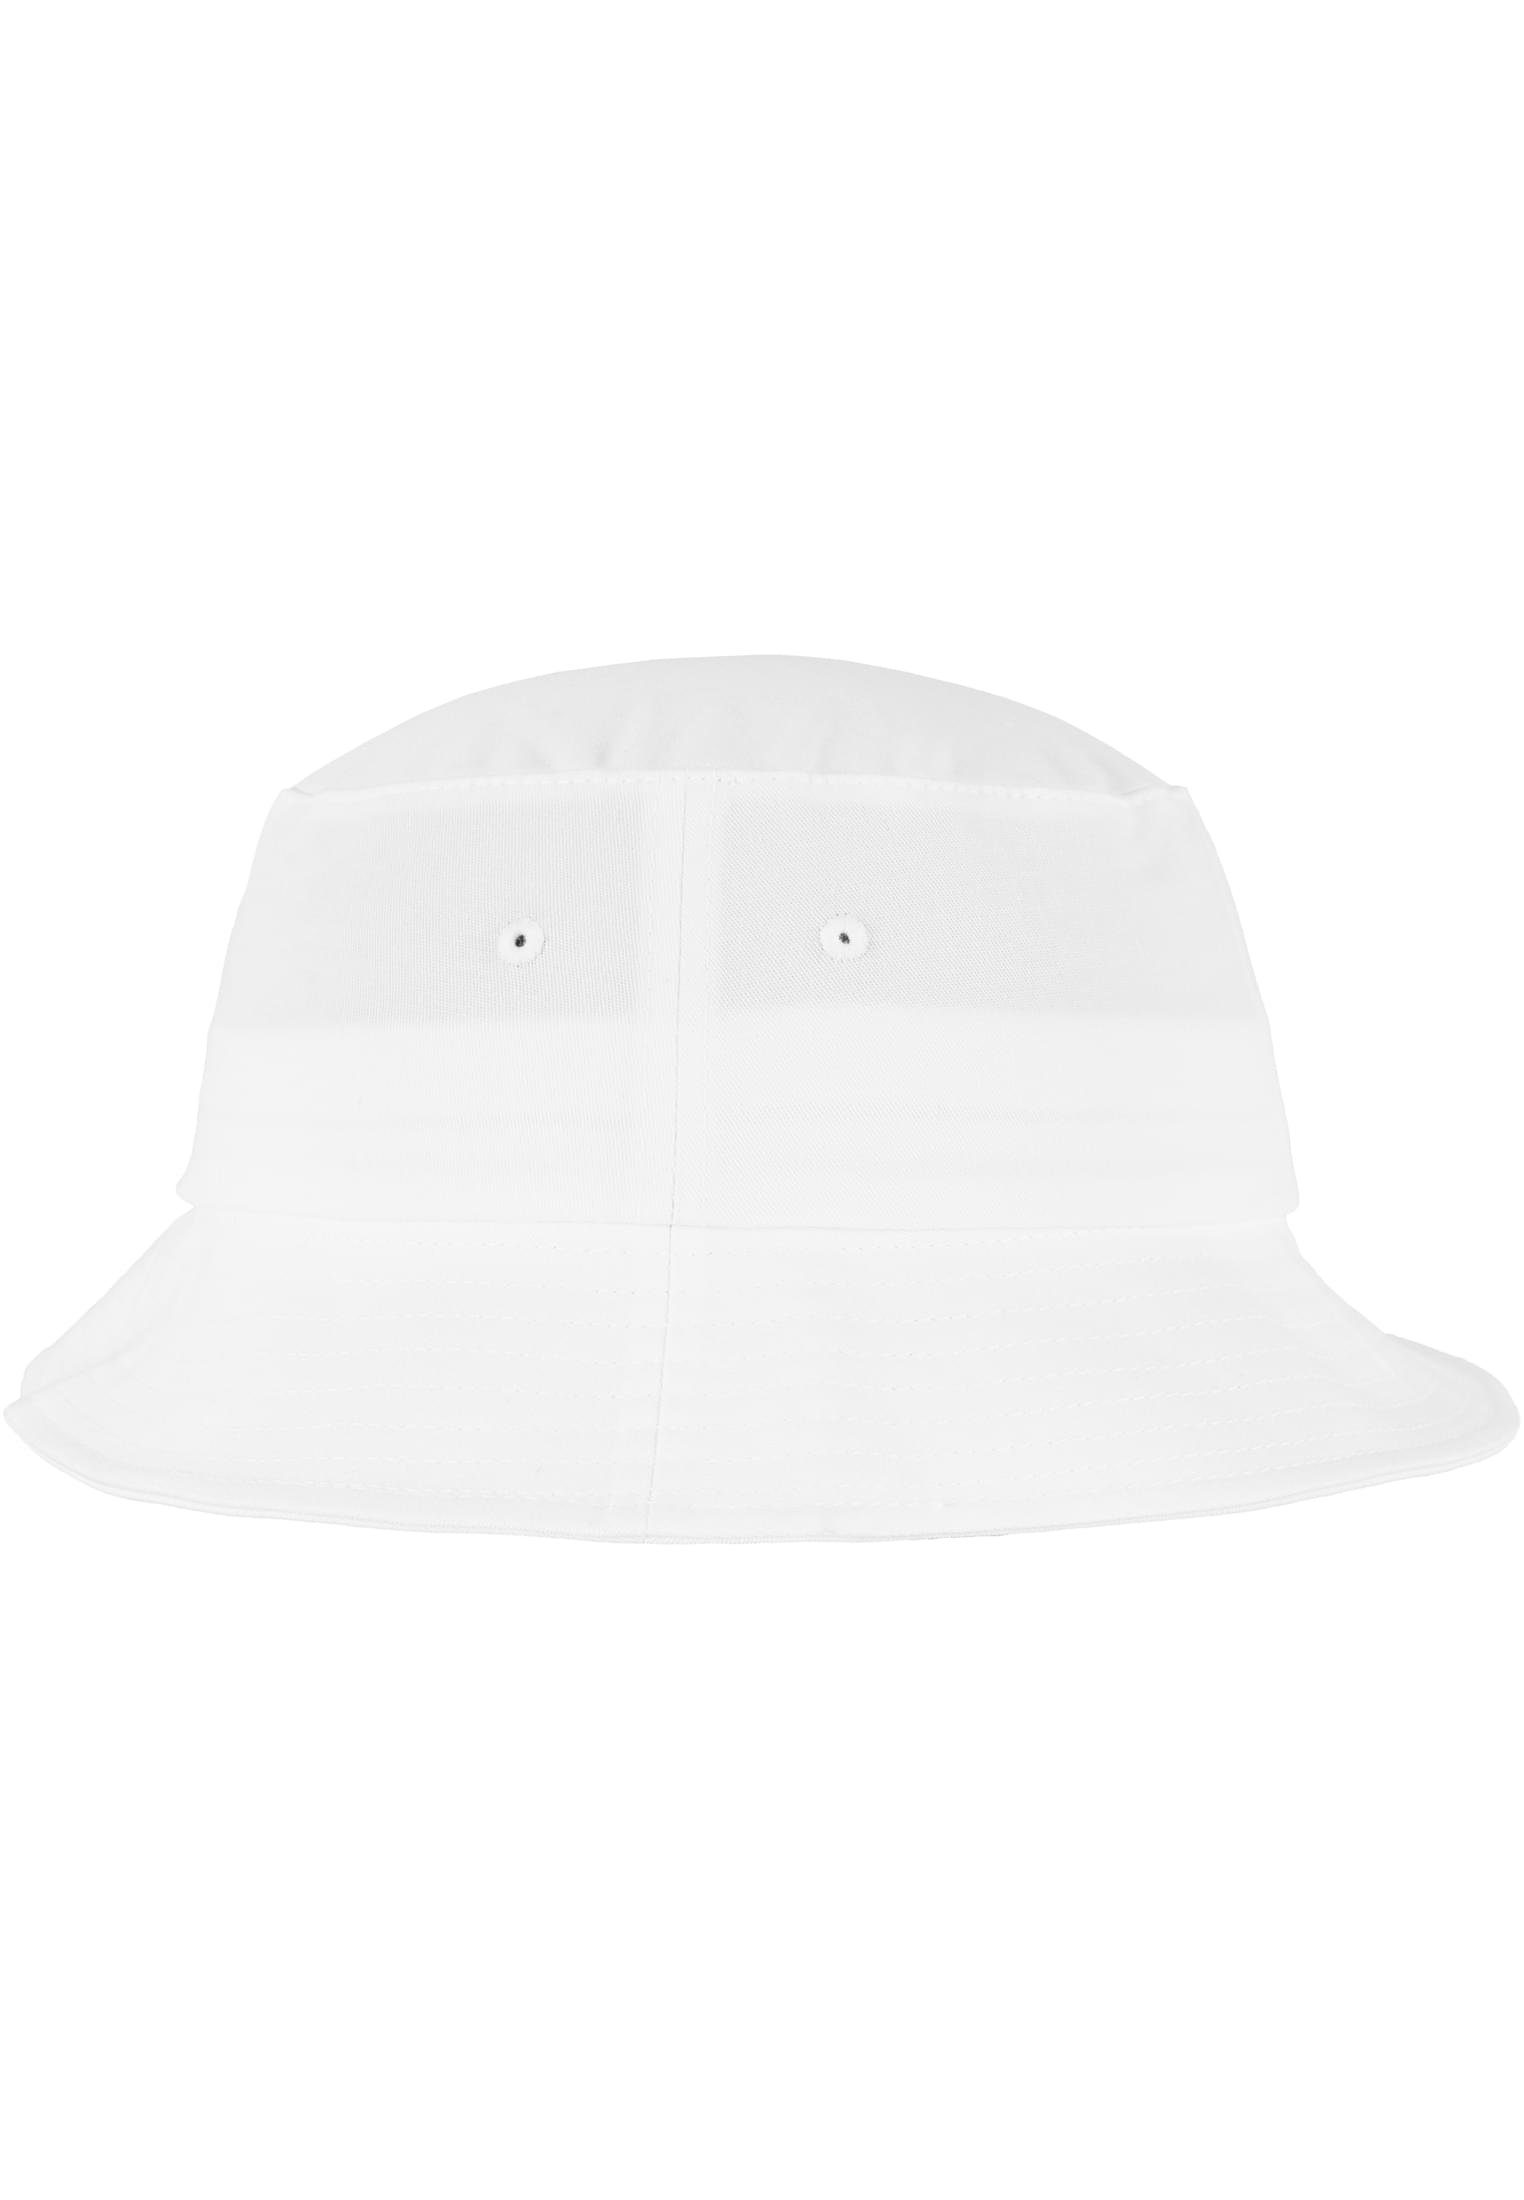 Flexfit Flex Accessoires Flexfit Twill white Cotton Cap Hat Bucket